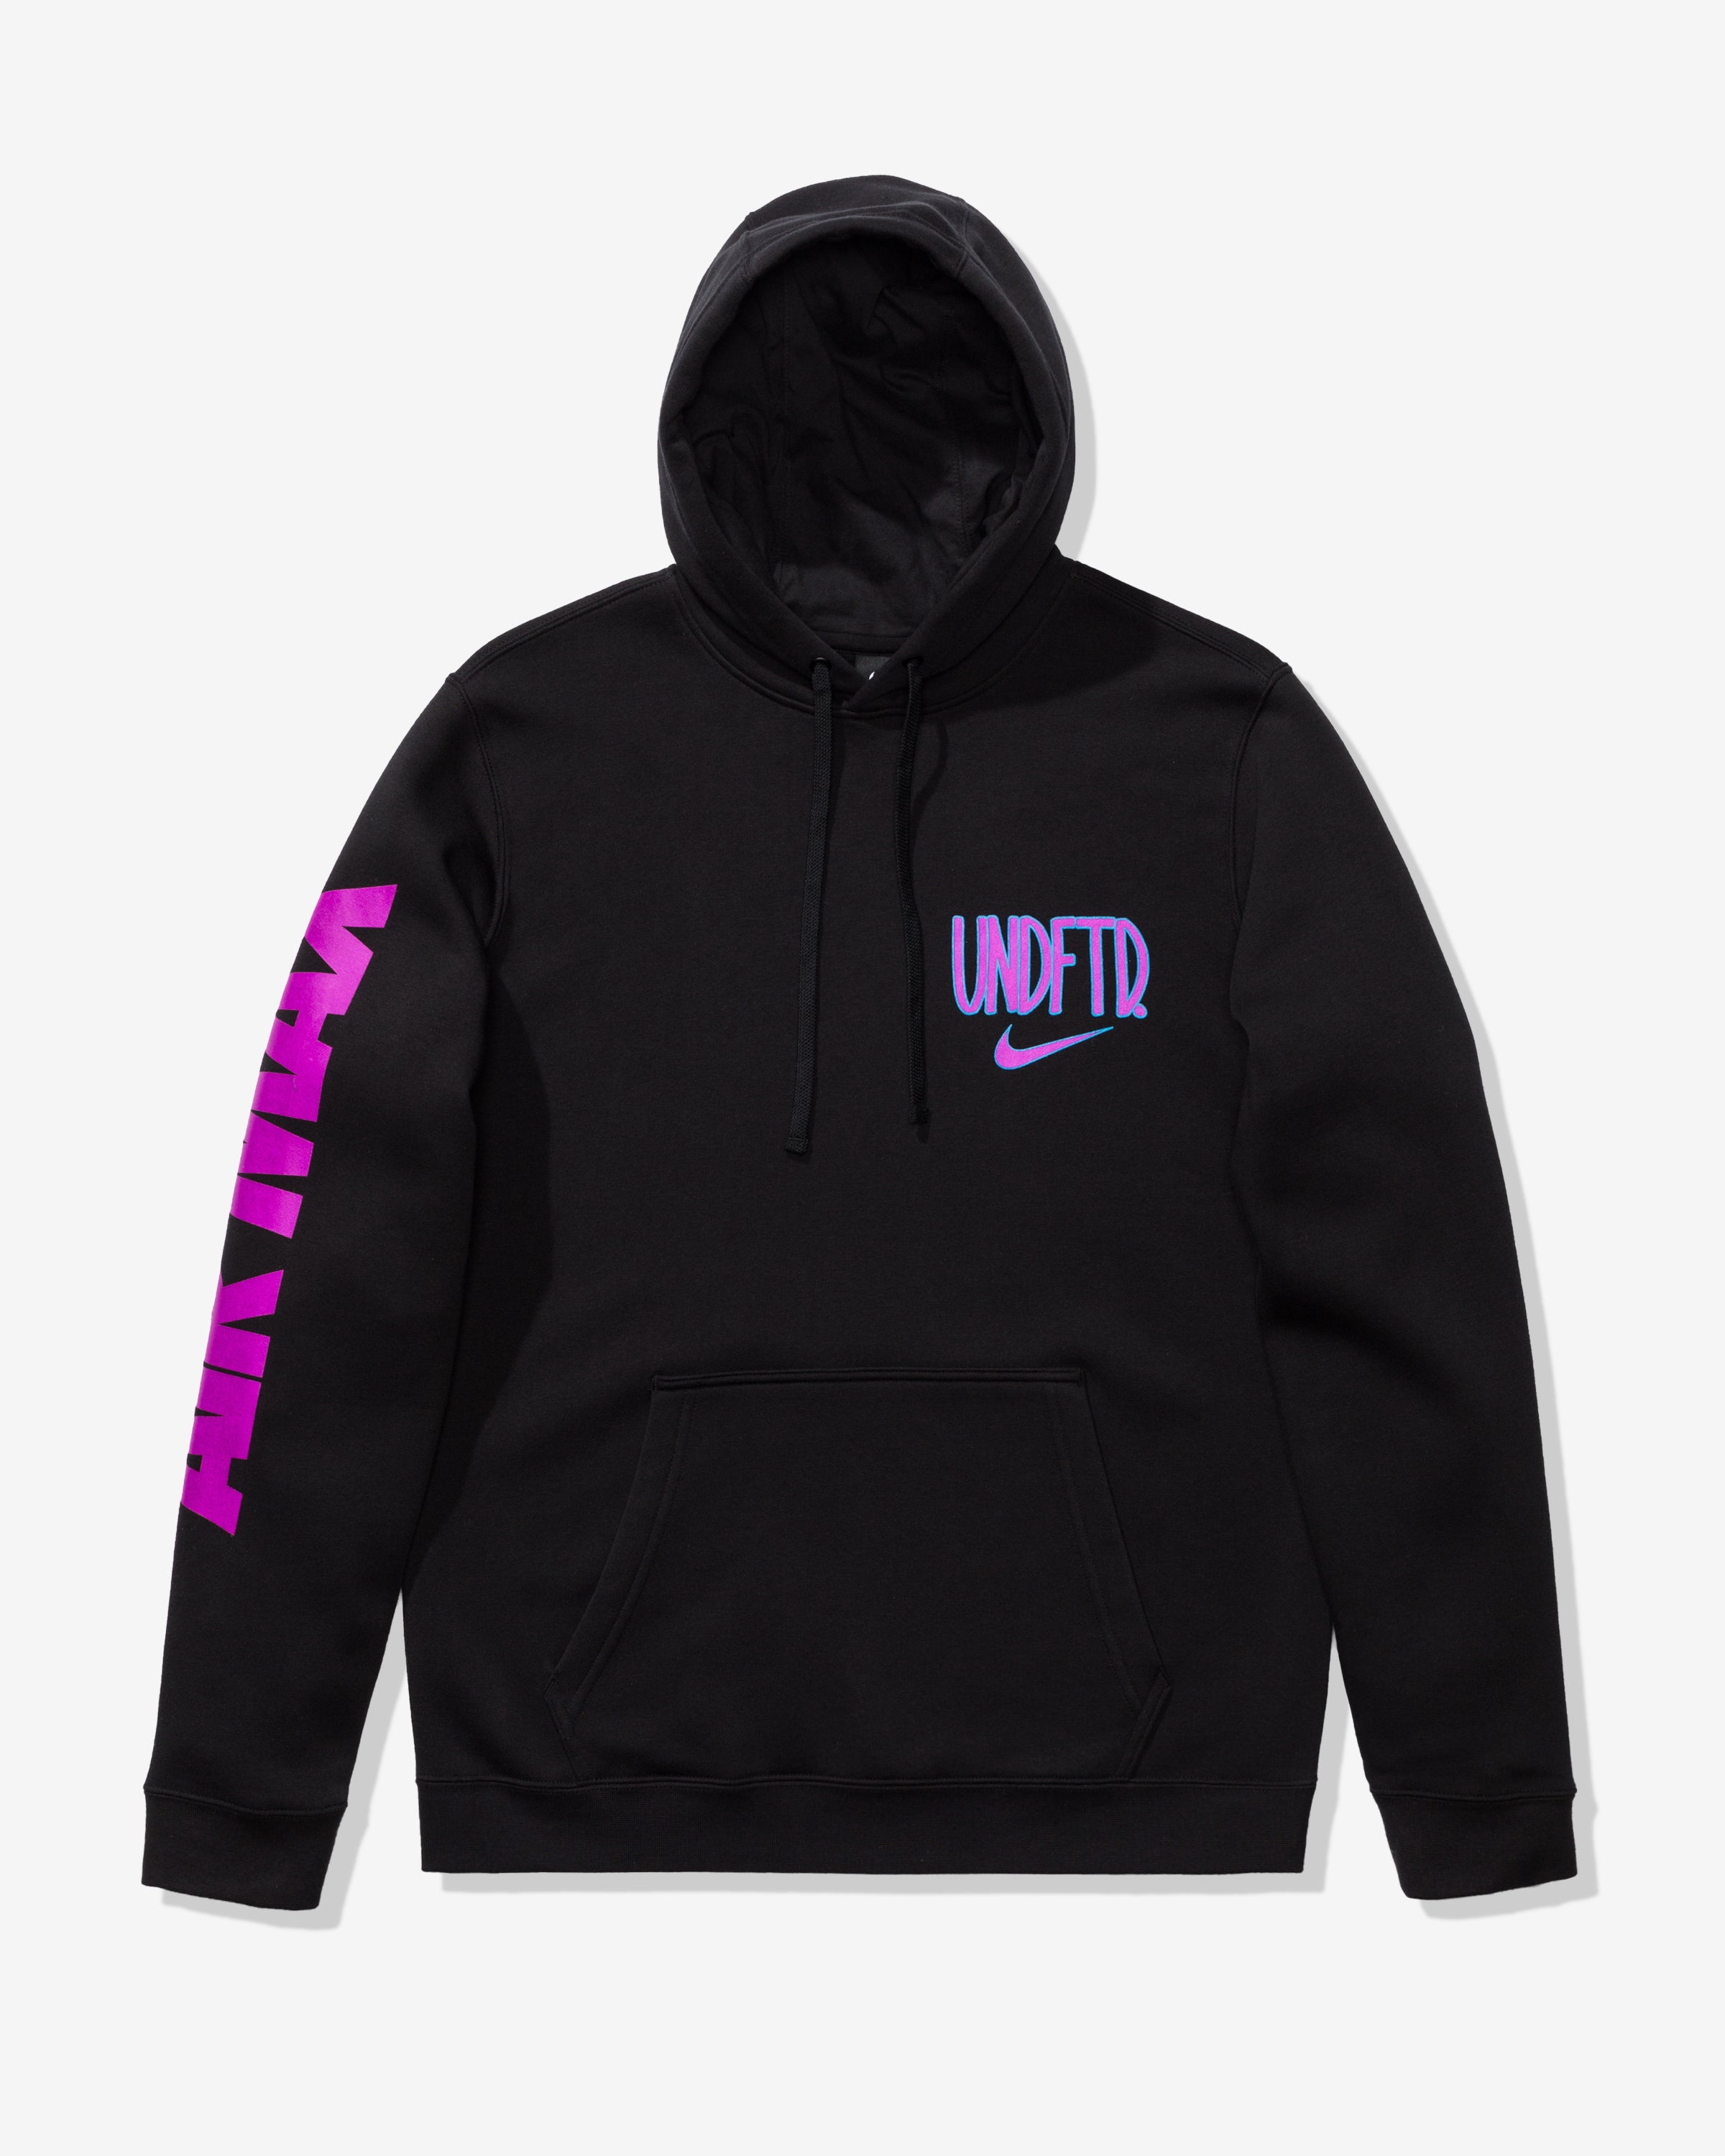 purple and black nike hoodie